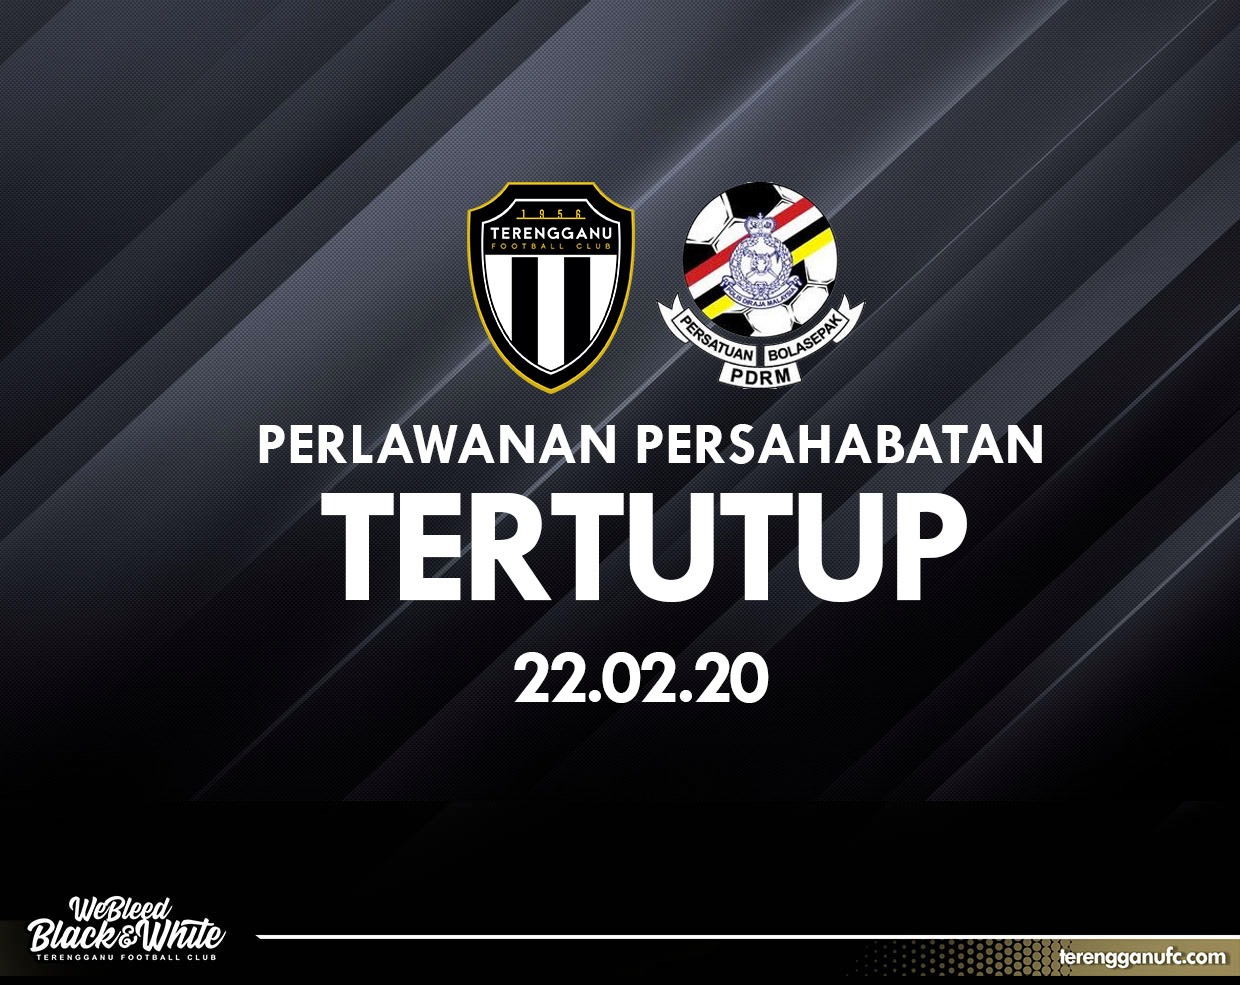 Terengganu FC PDRM Perlawanan Tertutup Pra-Musim 2020